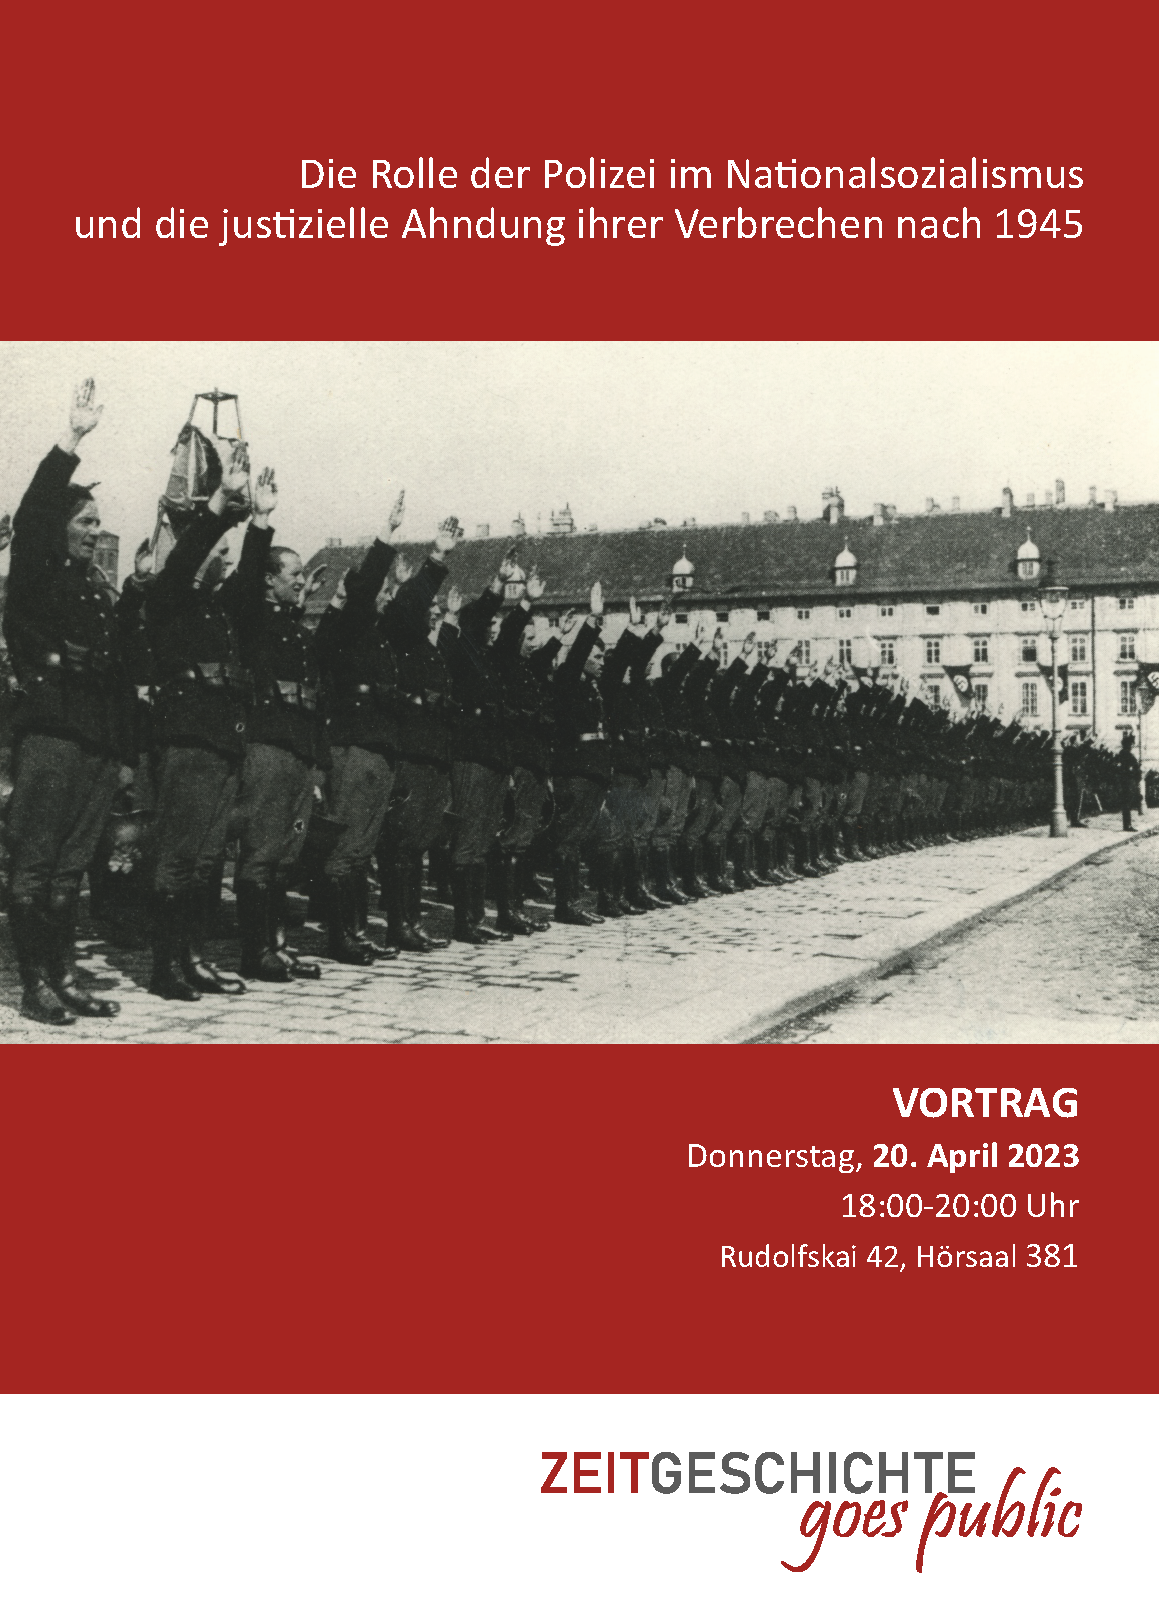 Die Rolle der österreichischen Polizei im Nationalsozialismus